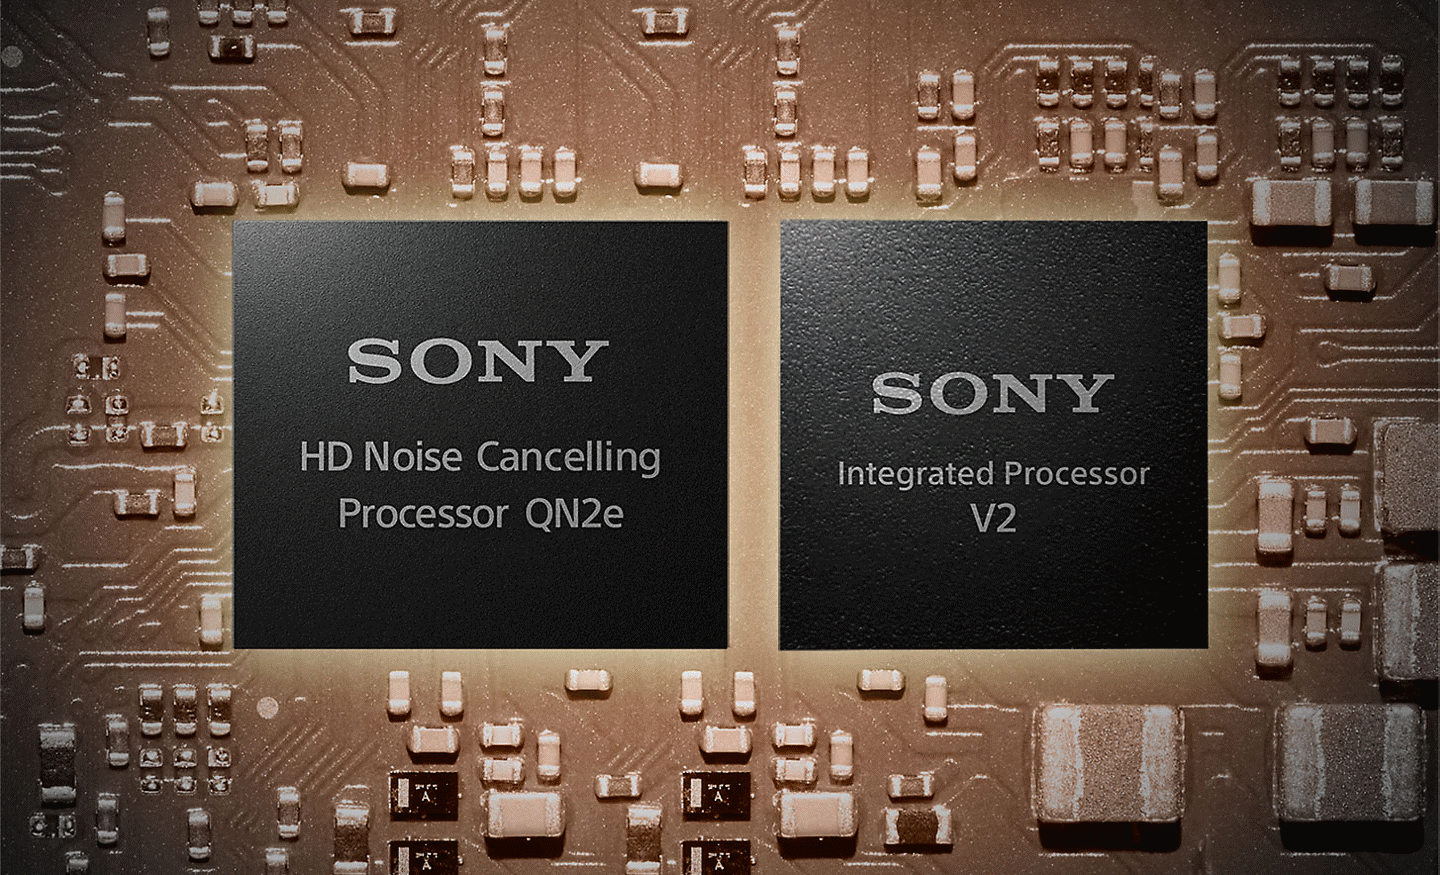 Snímek dvou procesorů na základní desce, vlevo je HD procesor s technologií pro potlačení okolního hluku a vpravo integrovaný procesor V2